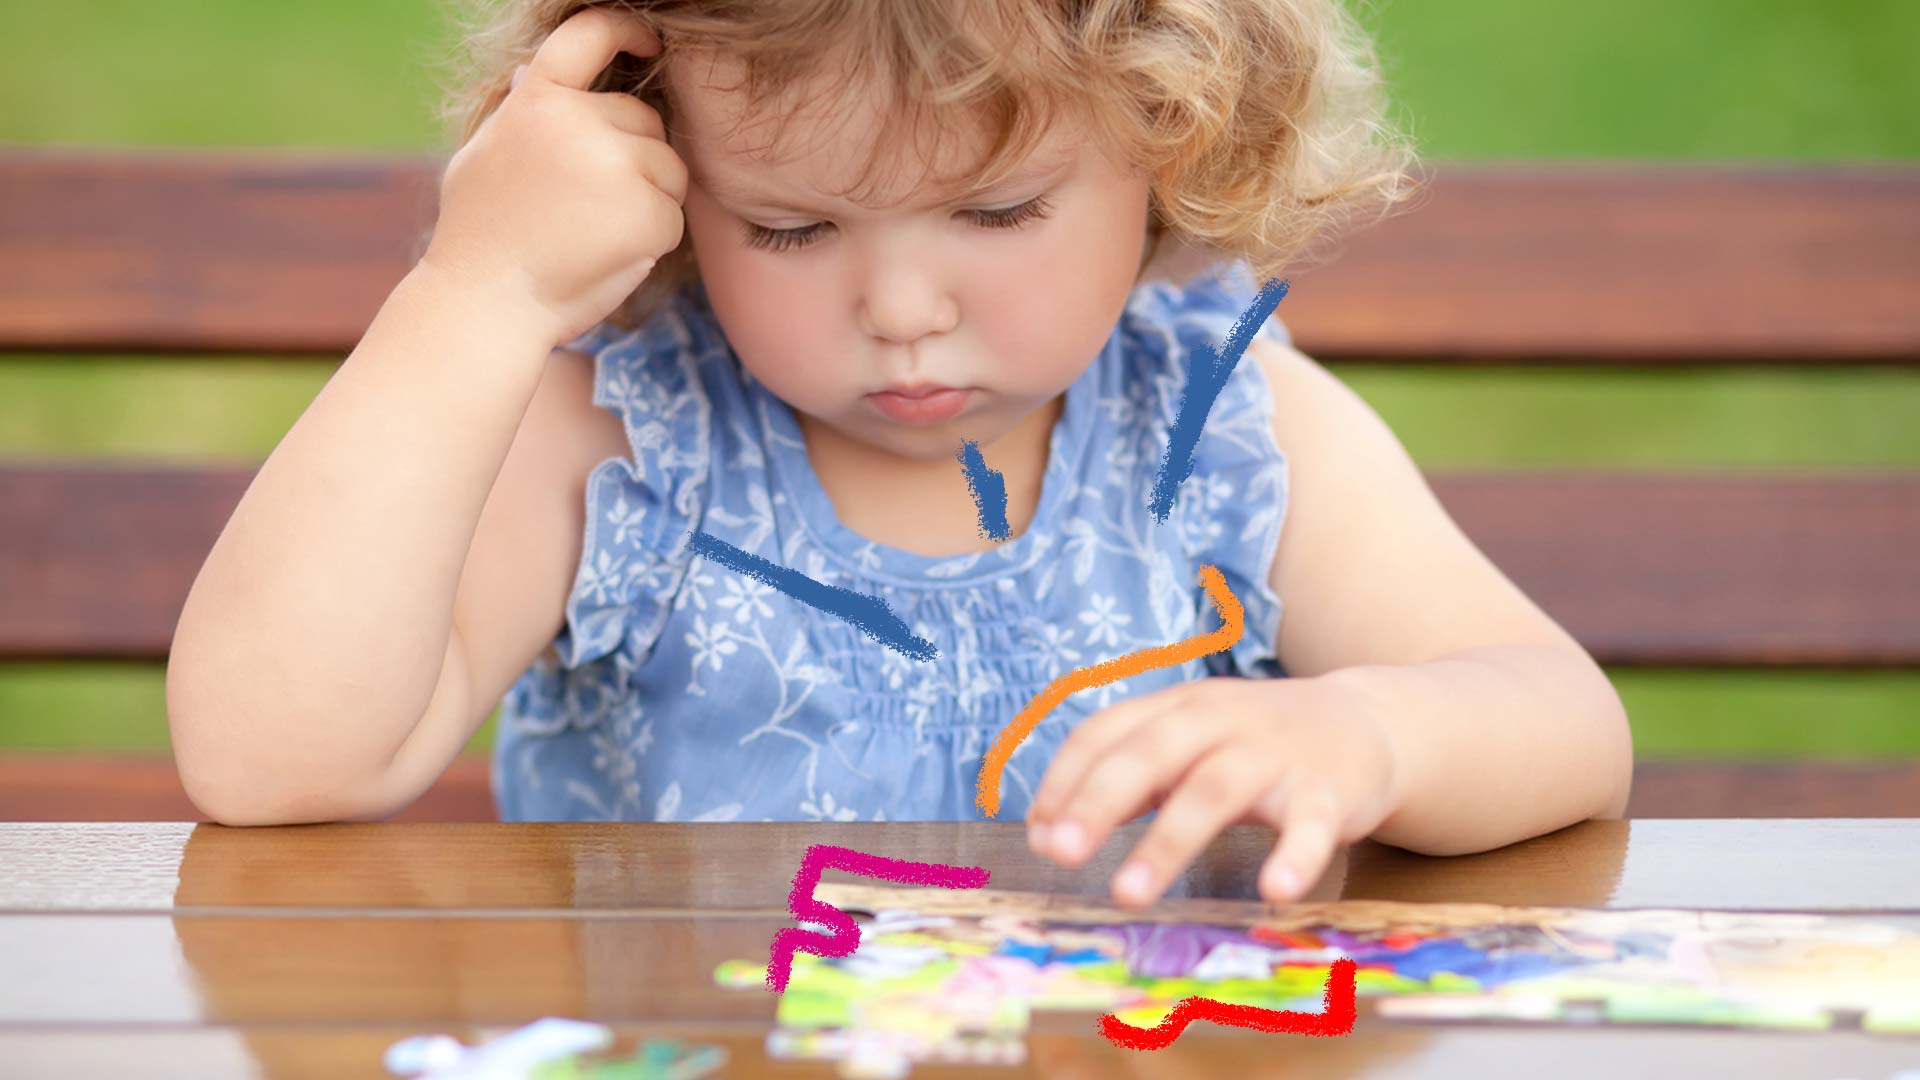 Filhos no trabalho: foto de uma criança que olha para um jogo em cima de uma mesa e coloca uma das mãos na cabeça.